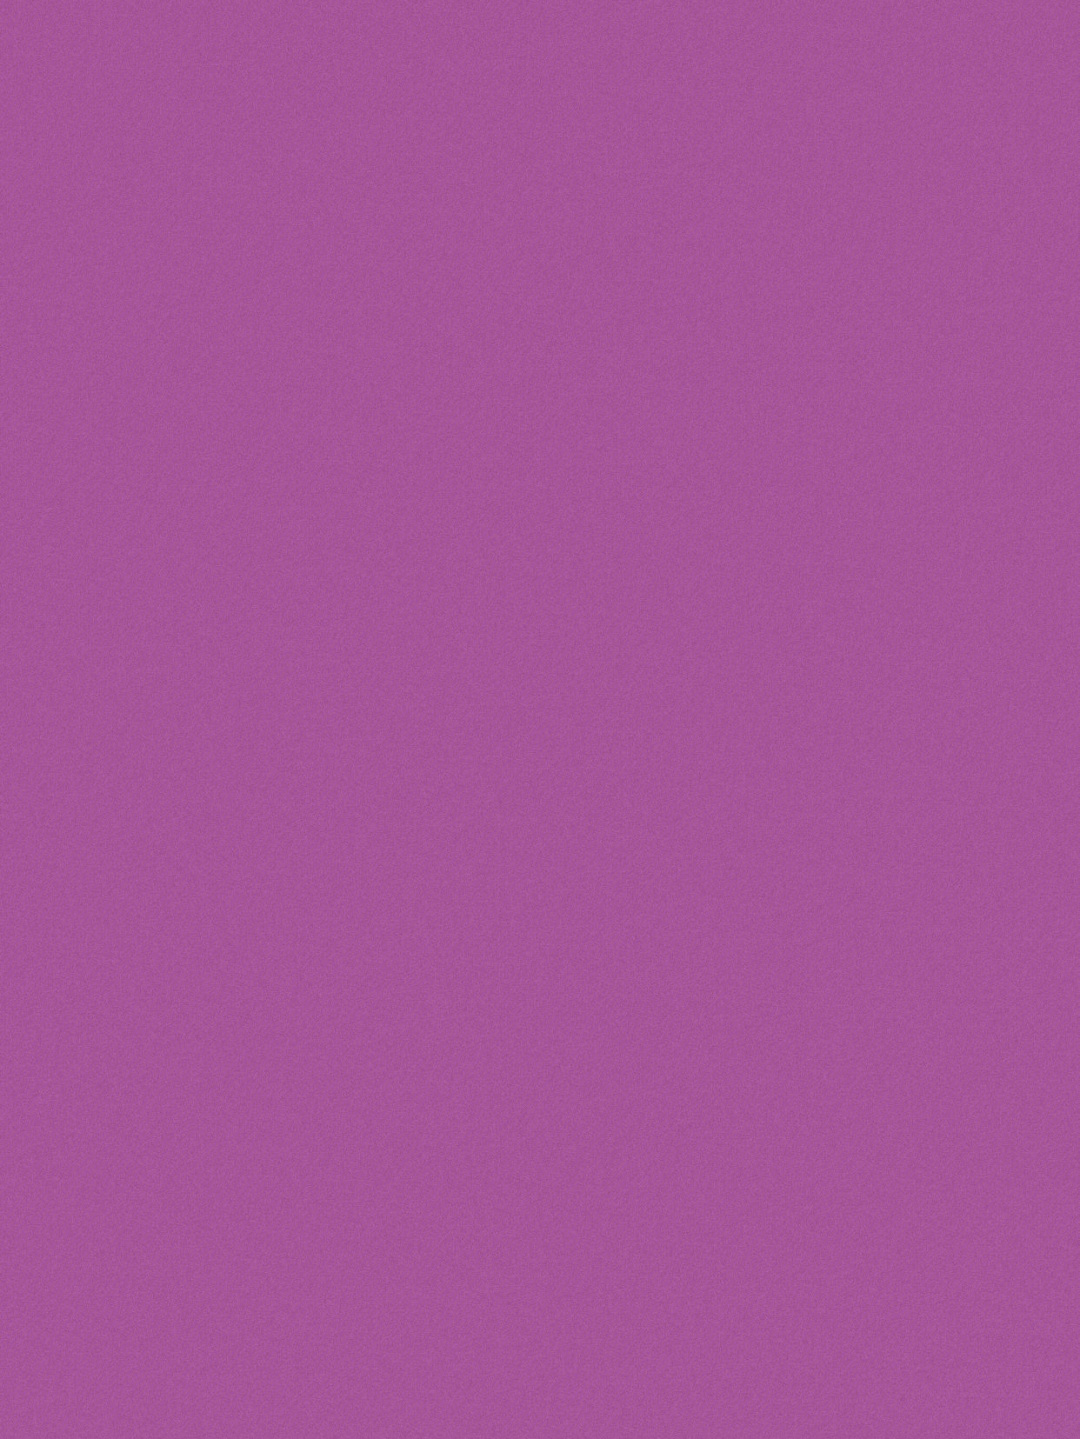 紫色色卡原来这就是齐桓公敲喜欢的紫色